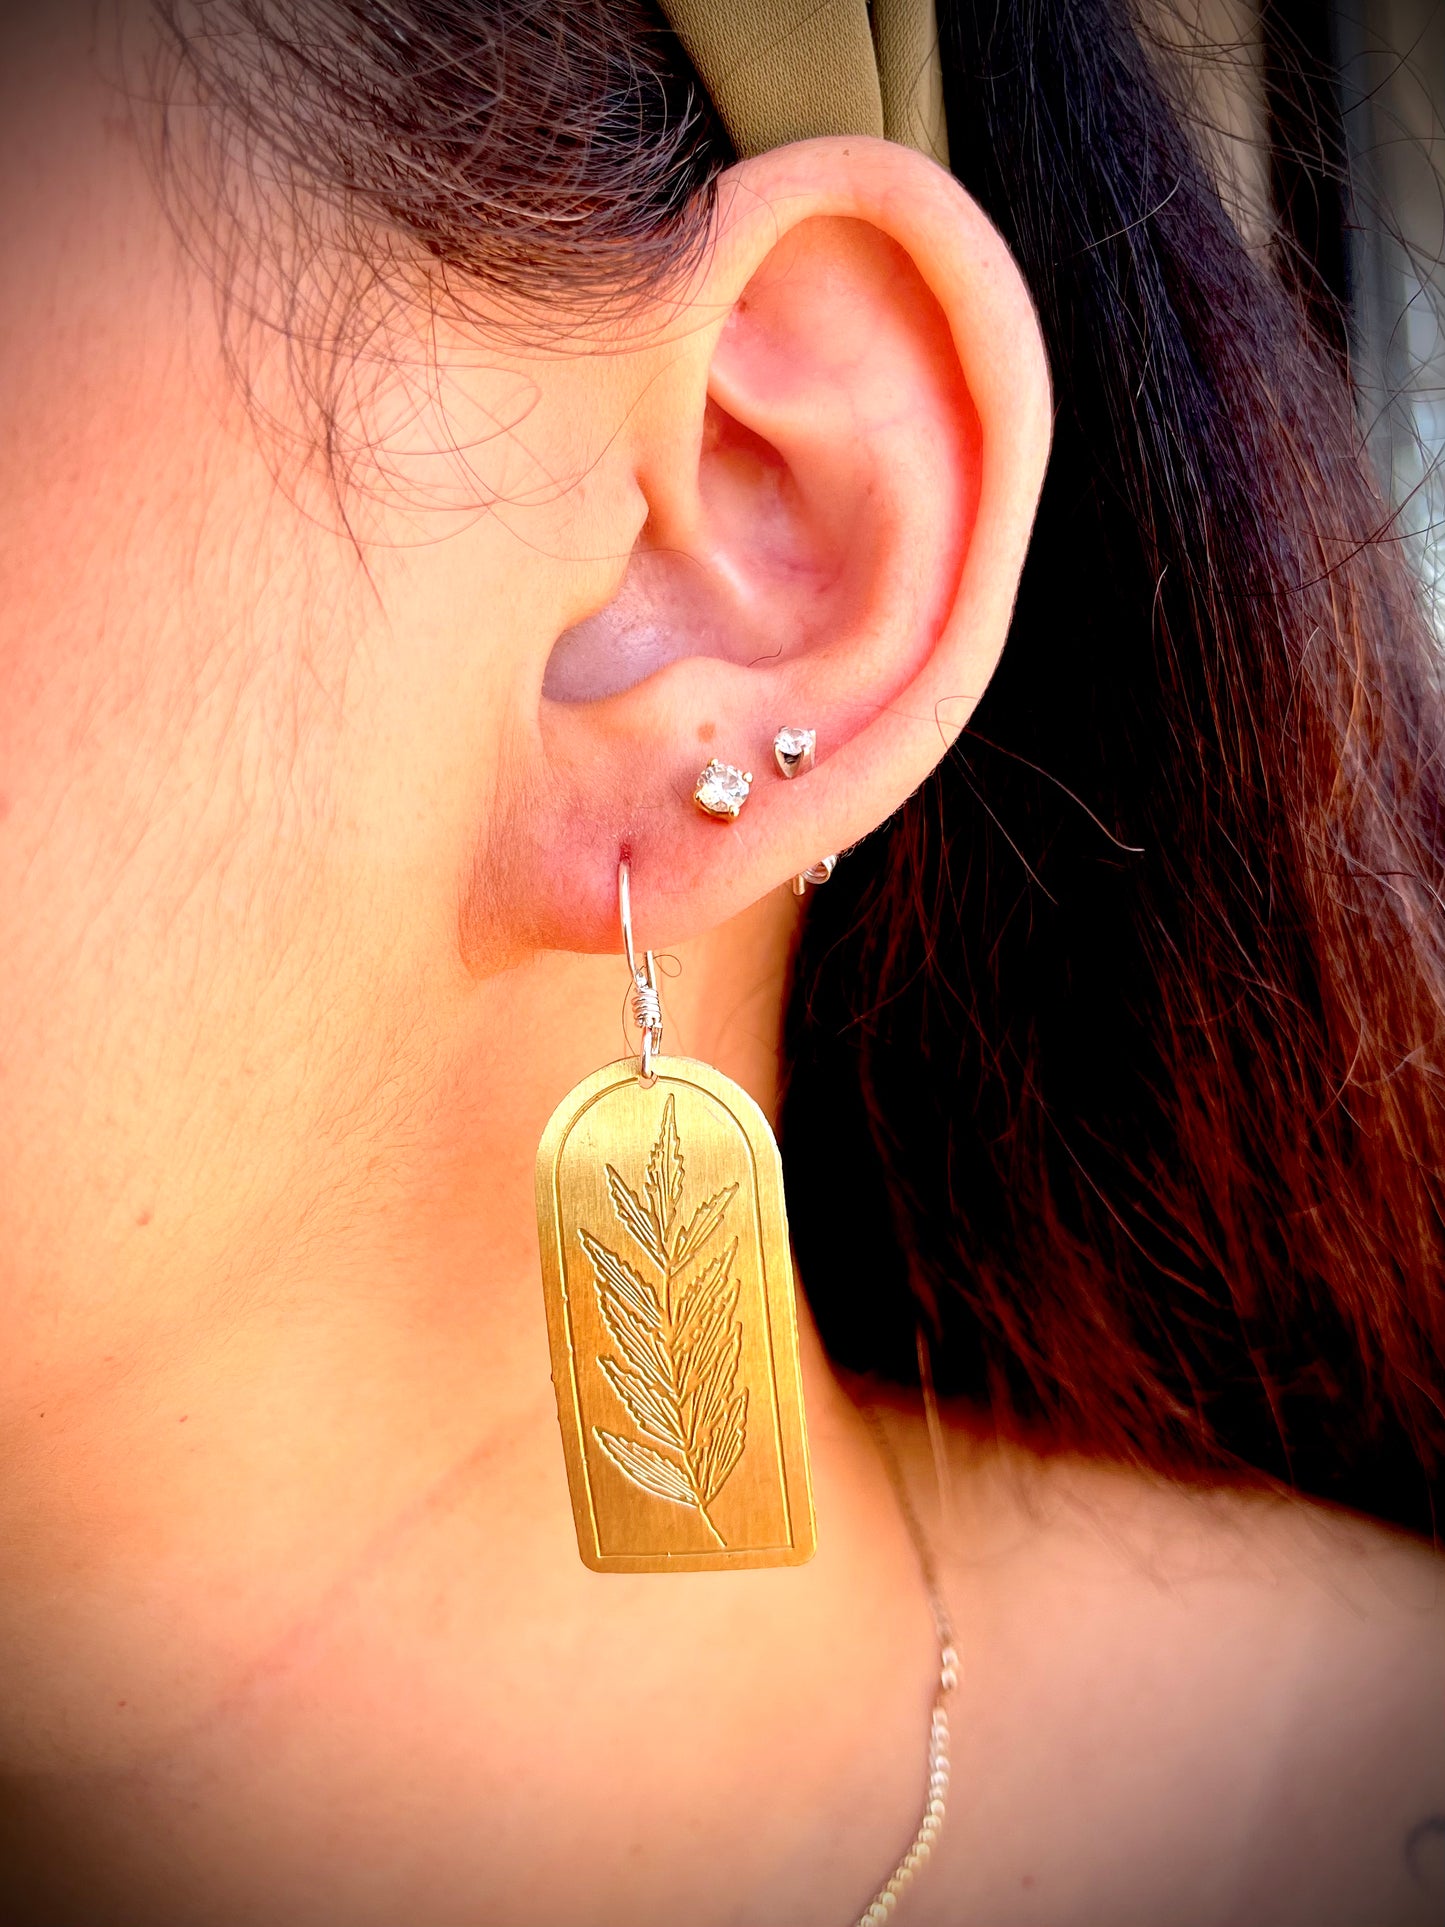 Etched Brass Metal Earrings - Byfield Fern Rectangle